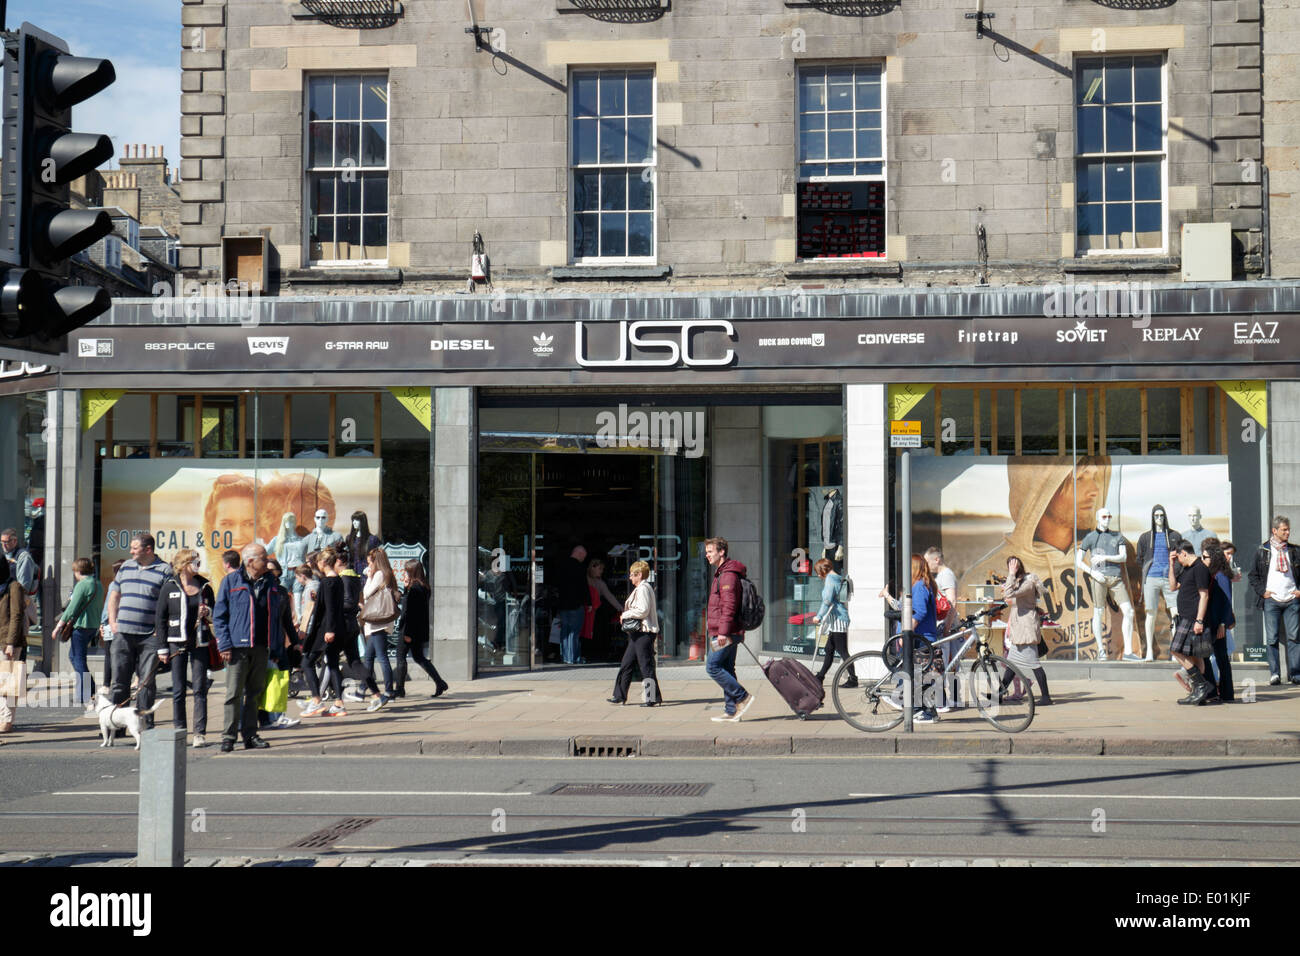 USC negozio di fronte a Princes Street, Edinburgh. Foto Stock